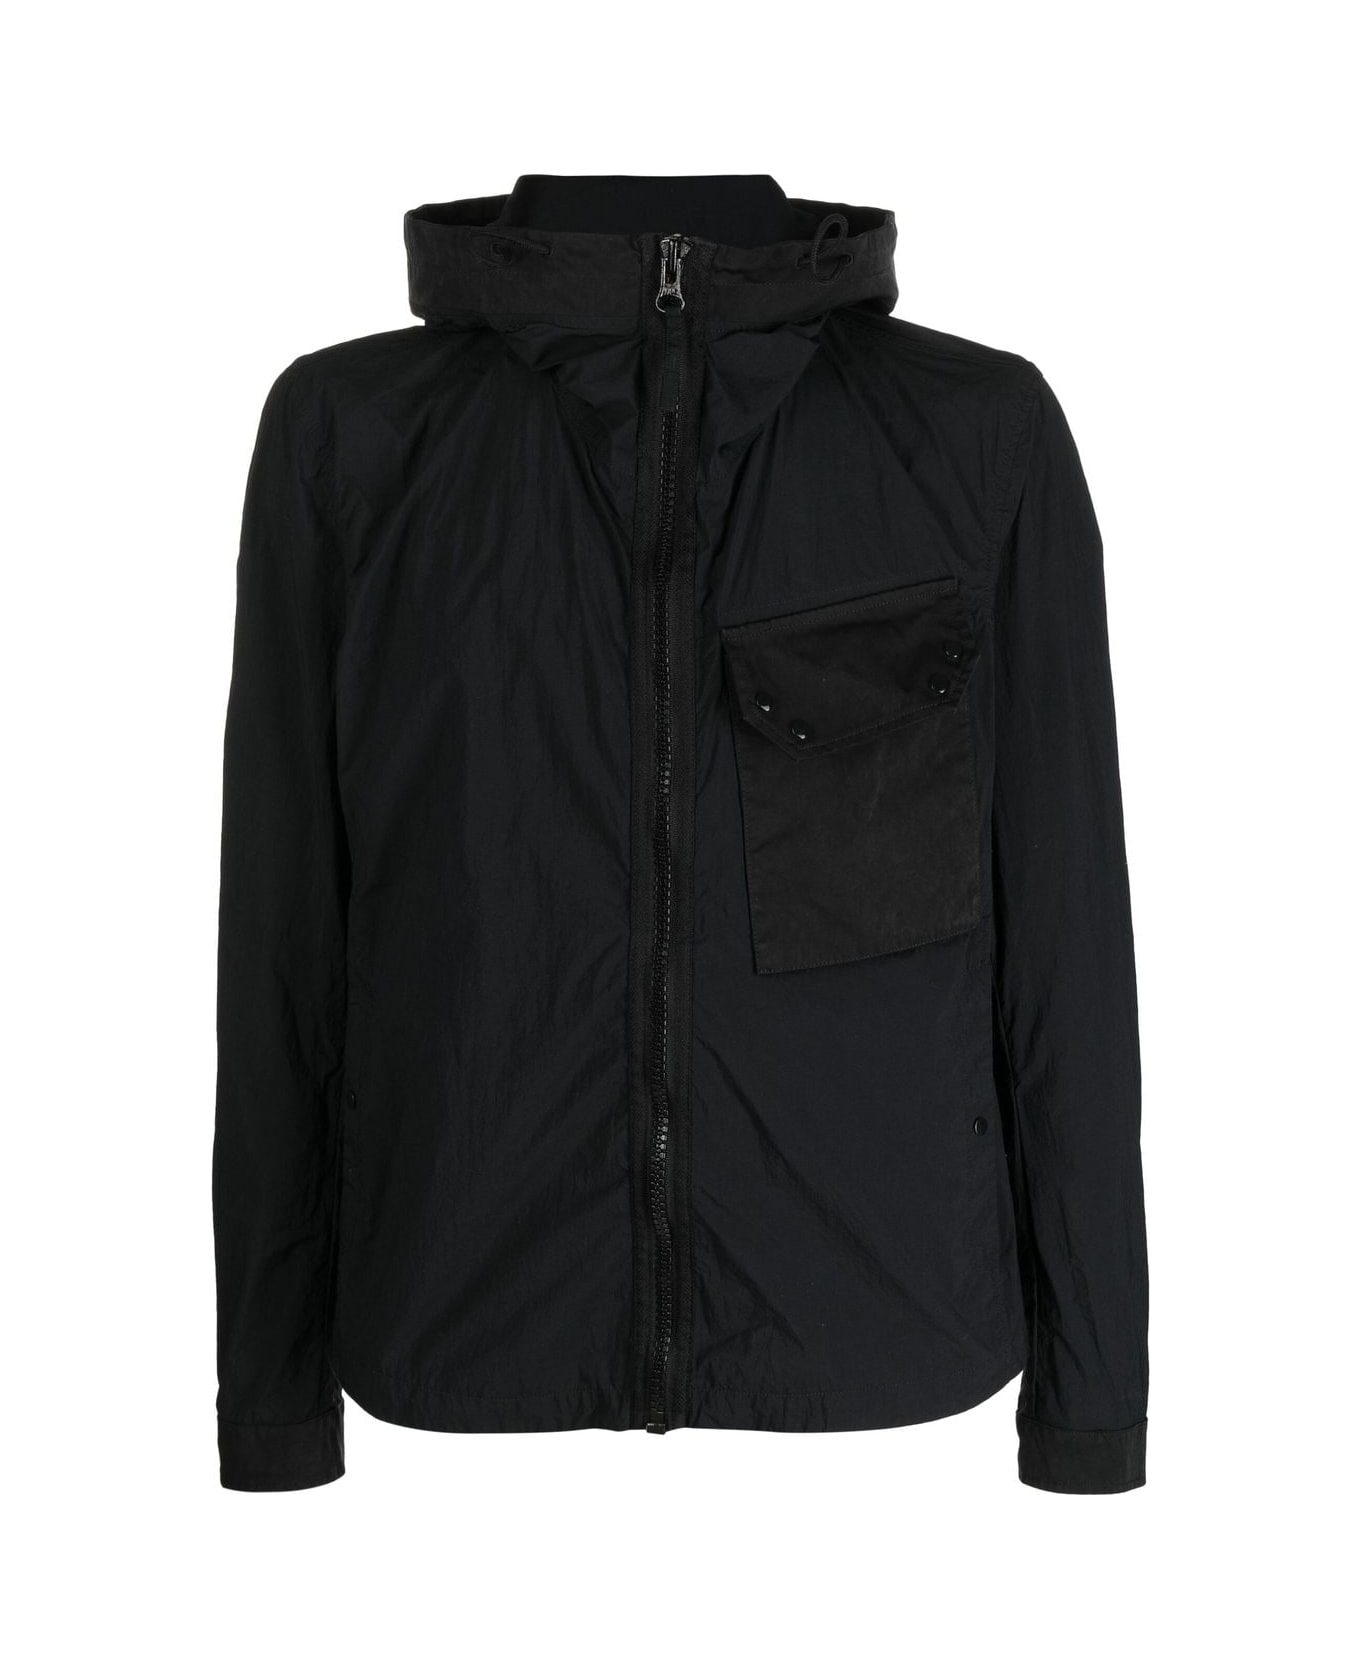 Ten C Hooded Zip-up Jacket In Black Technical Fabric Man - Black ジャケット